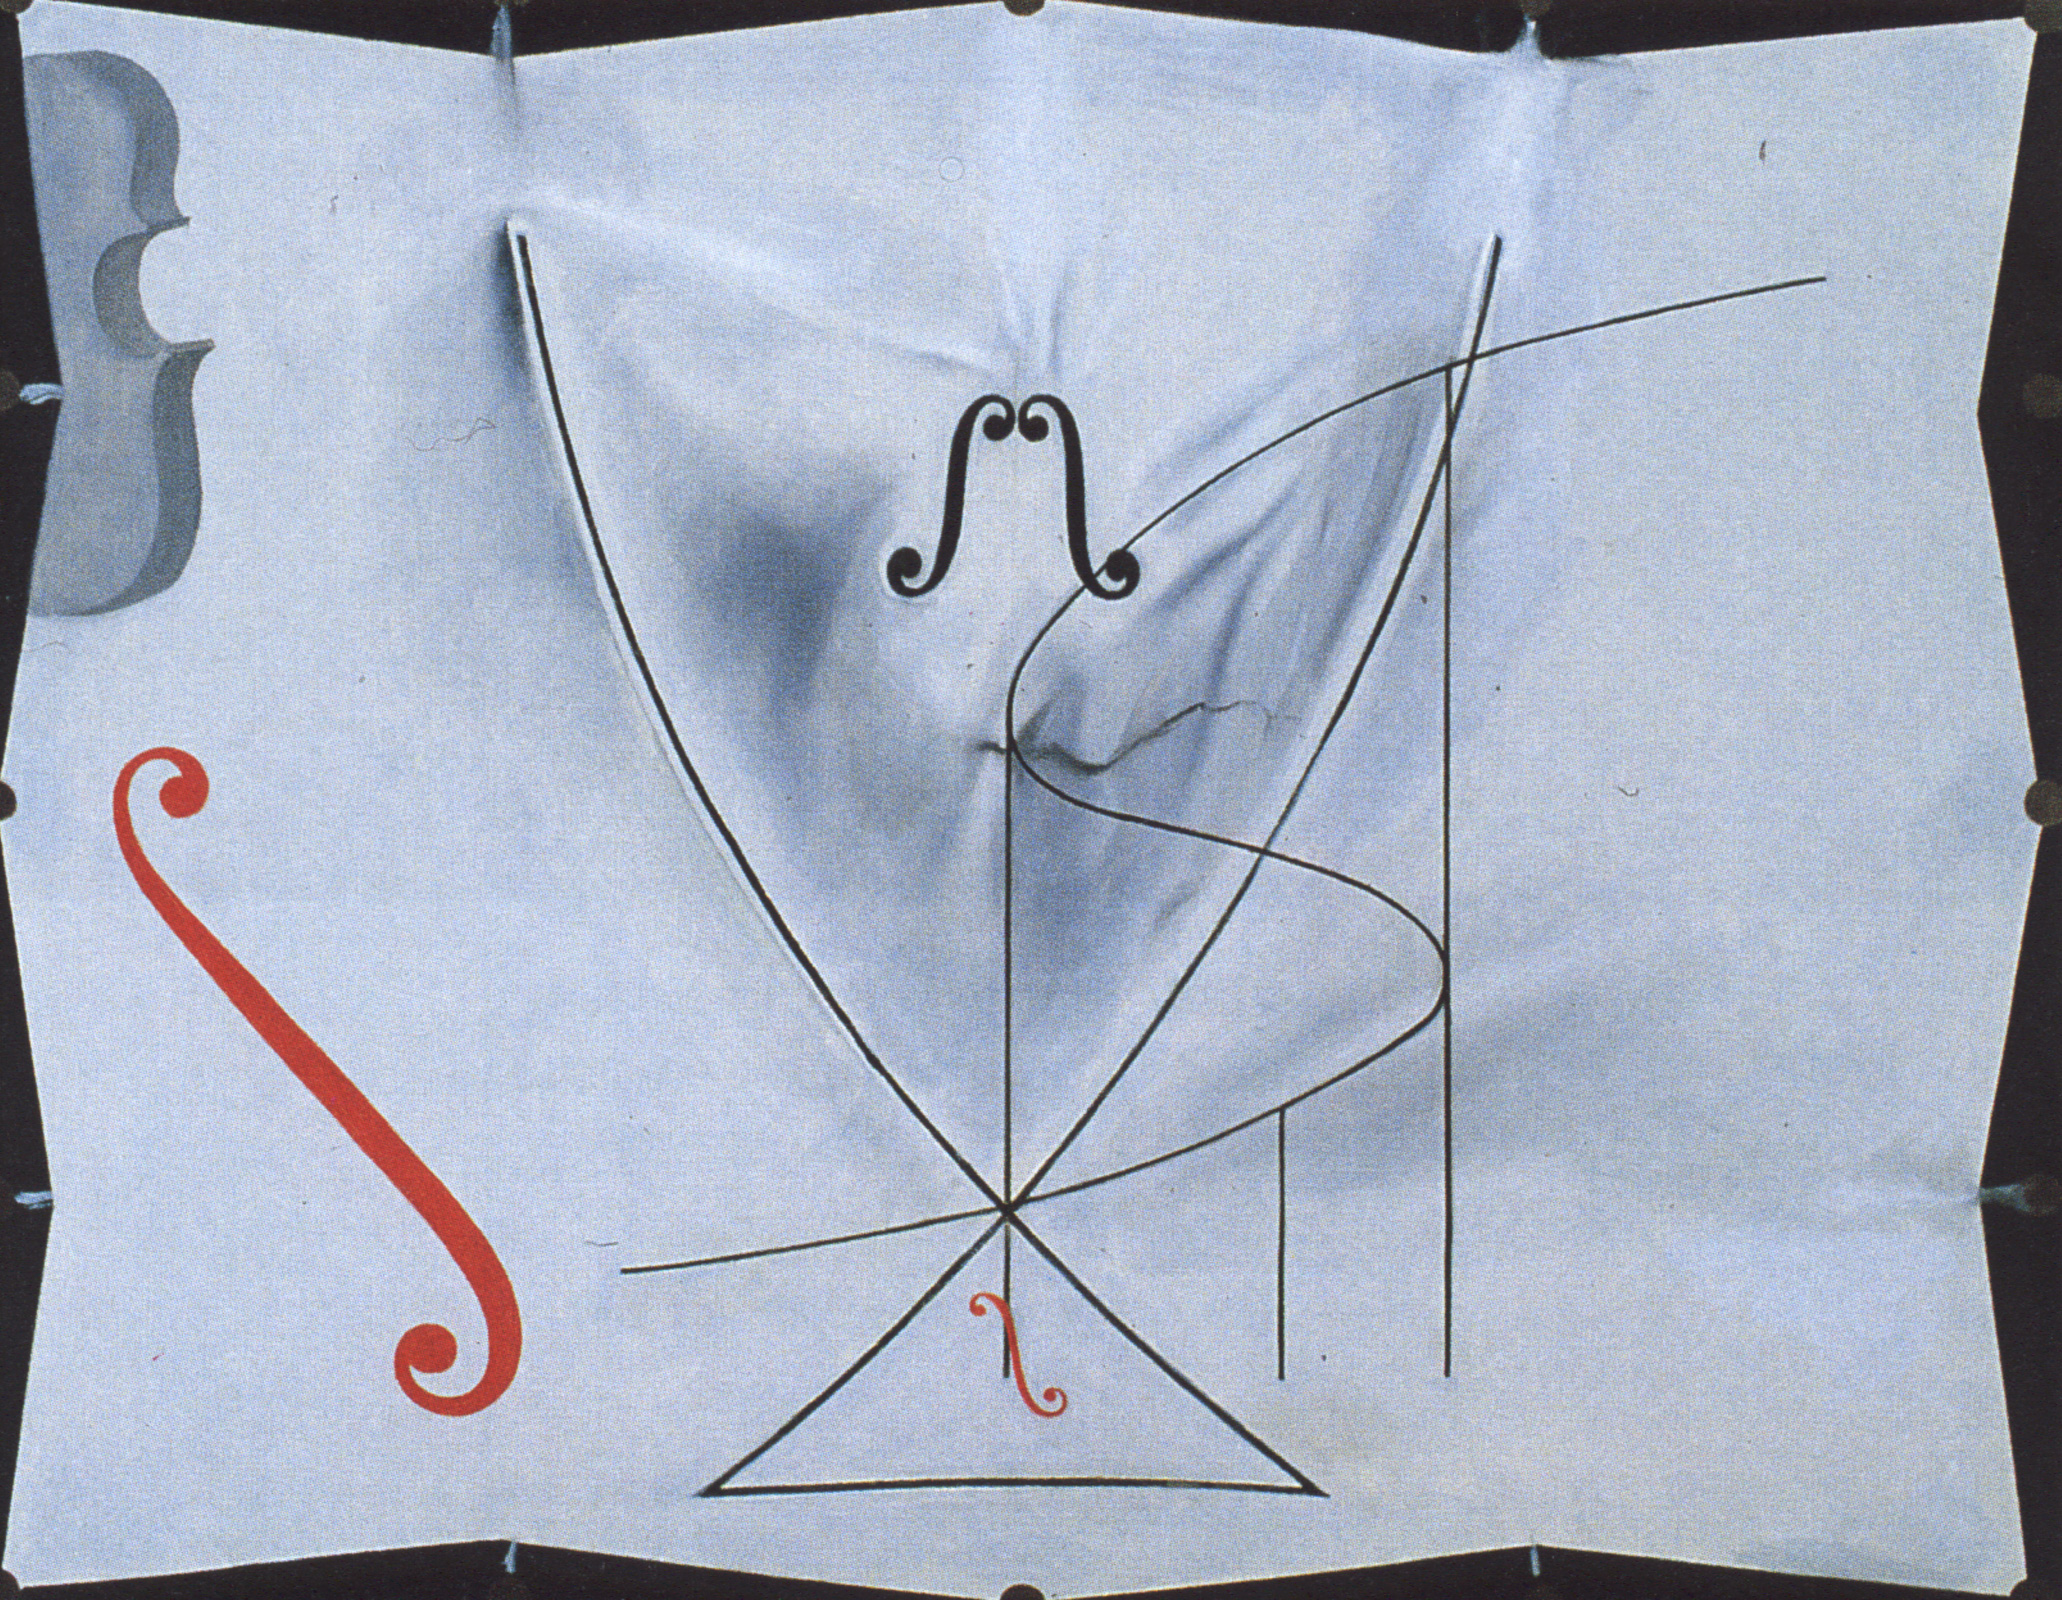 燕子尾巴 by Salvador Dalí - 1983 - 73 x 92.2 公分 